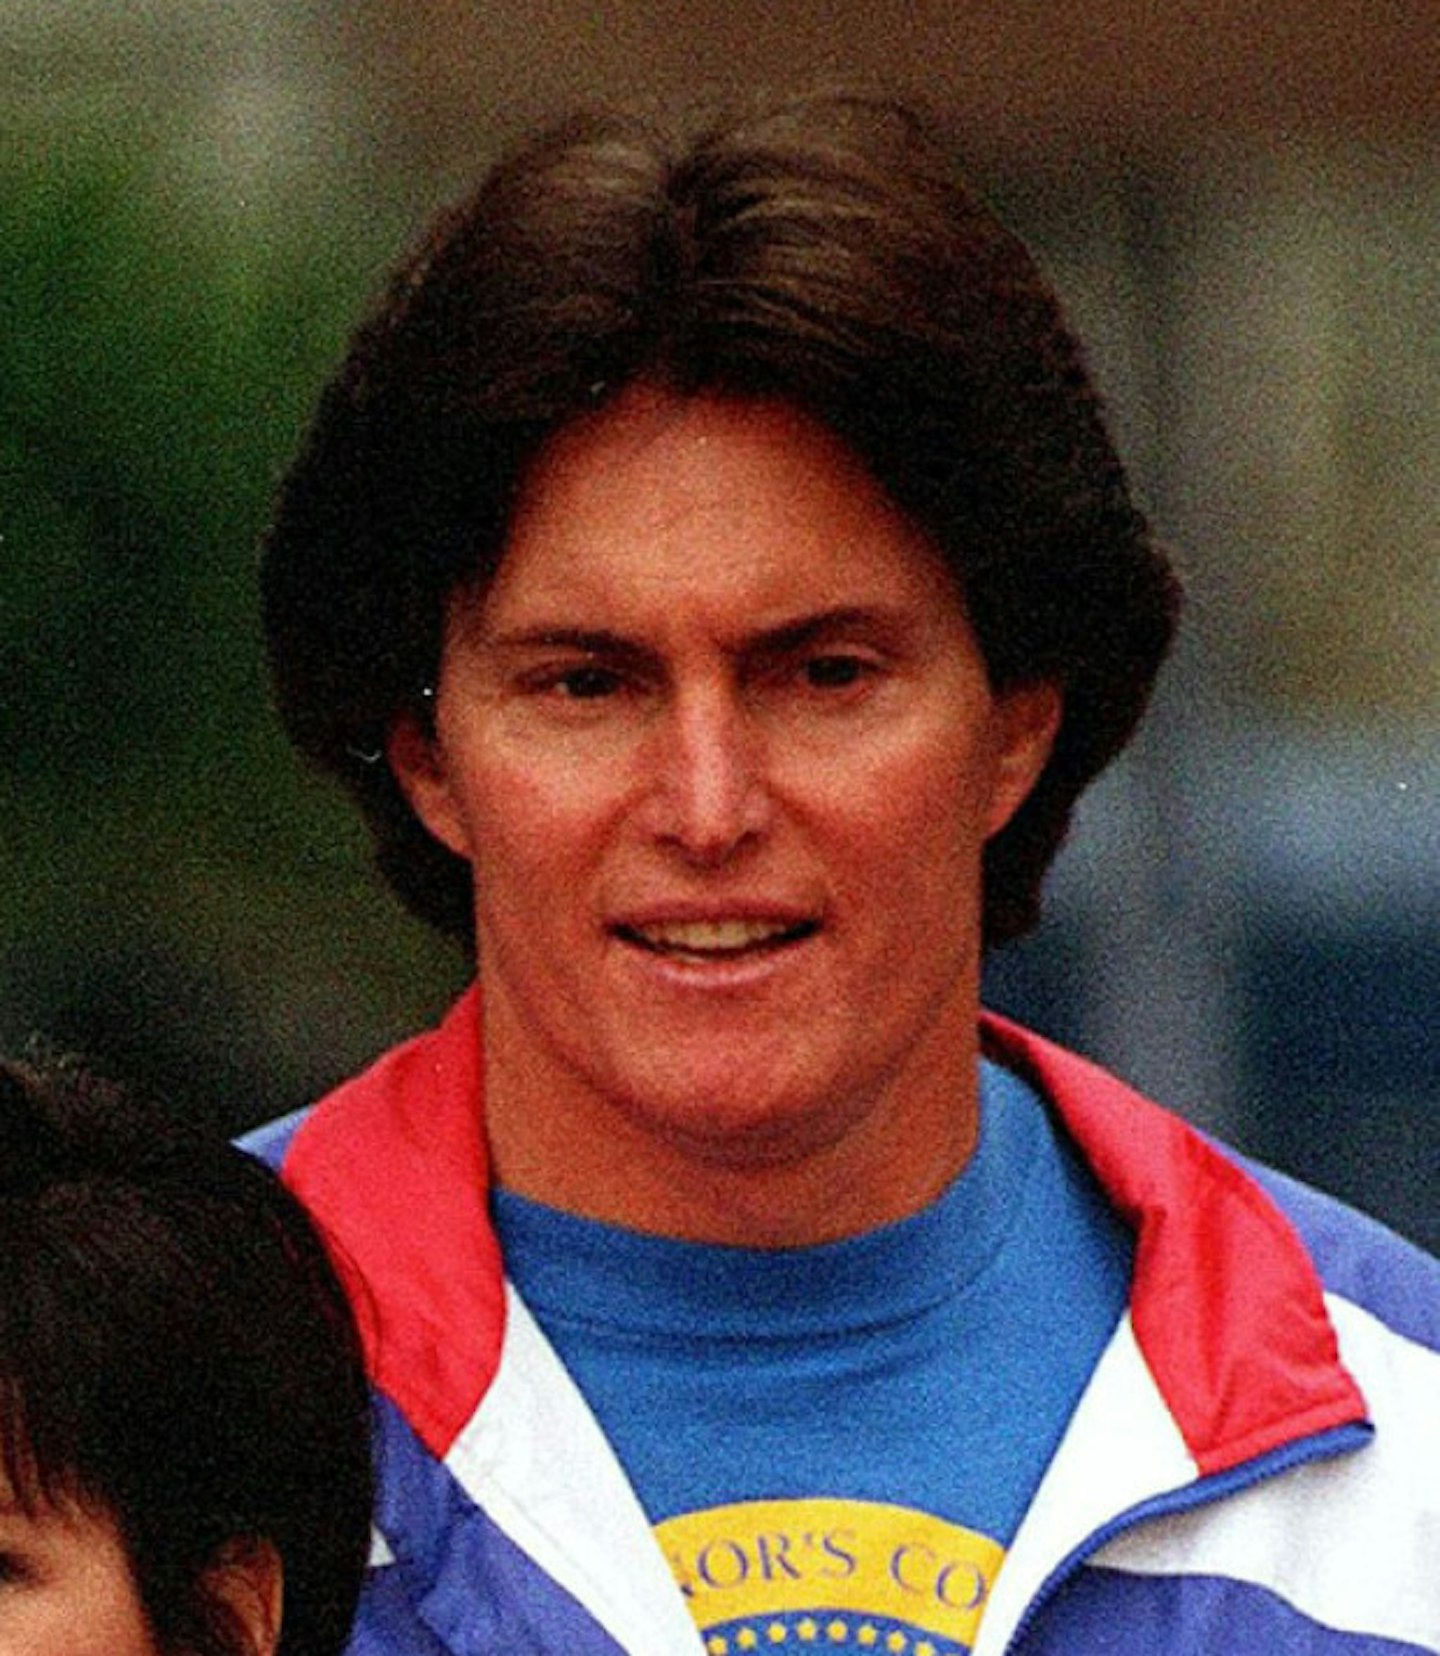 1994, aged 45